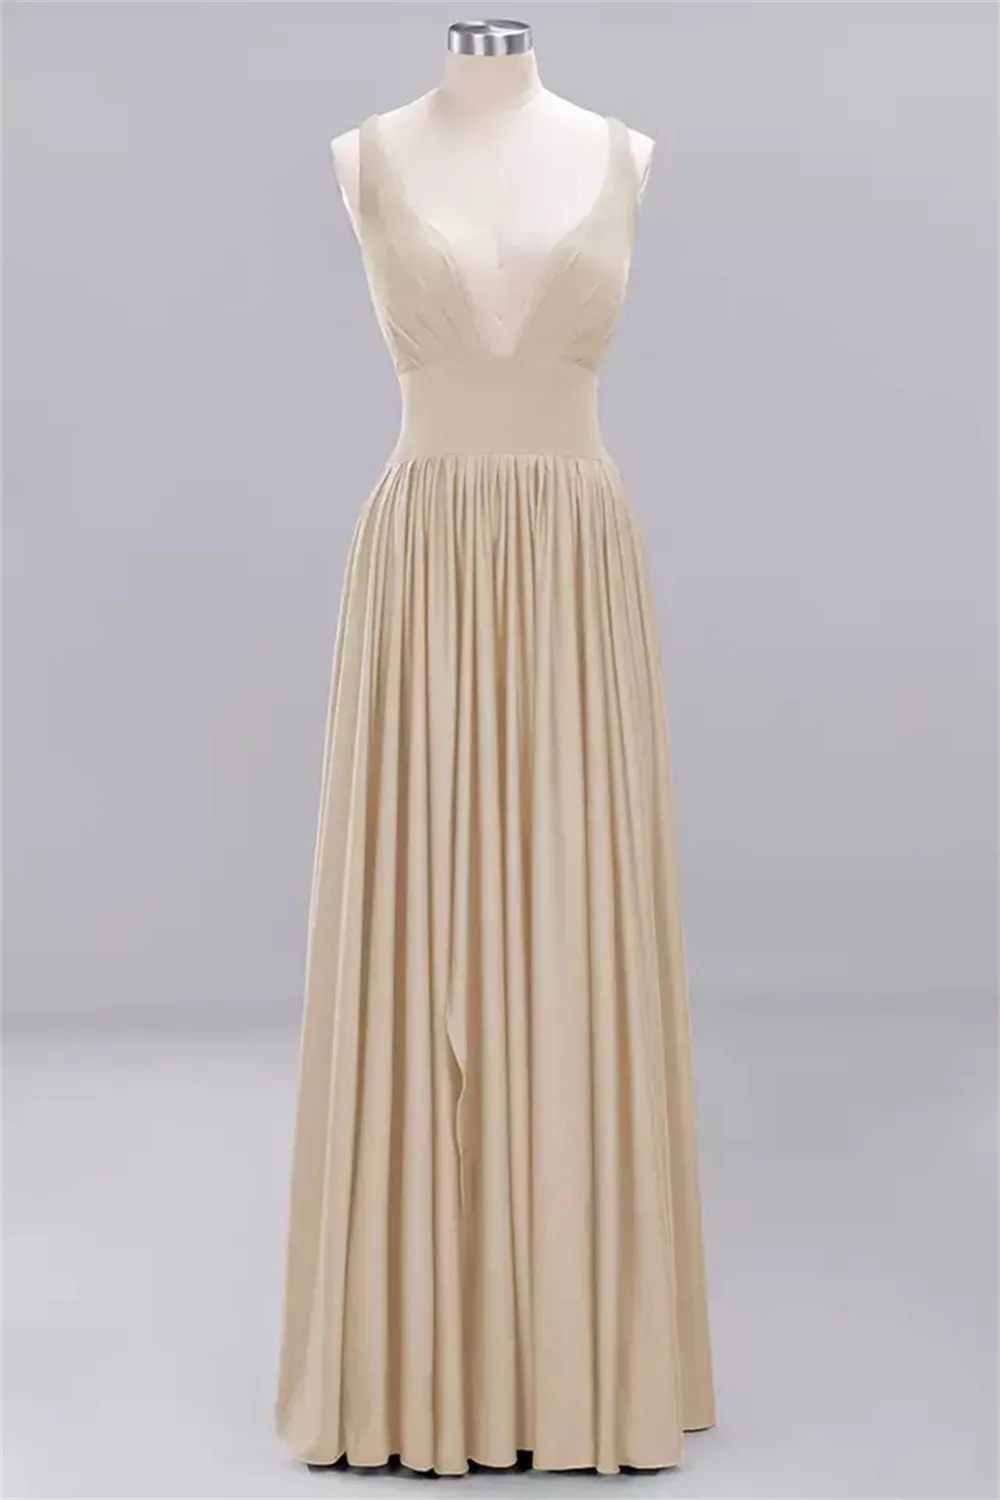 Robes de Demoiselle D'honneur Champagne, livraison en 24 heures, en tissu élastique bon marché, robe de soirée de mariage, nouvelle collection 2022